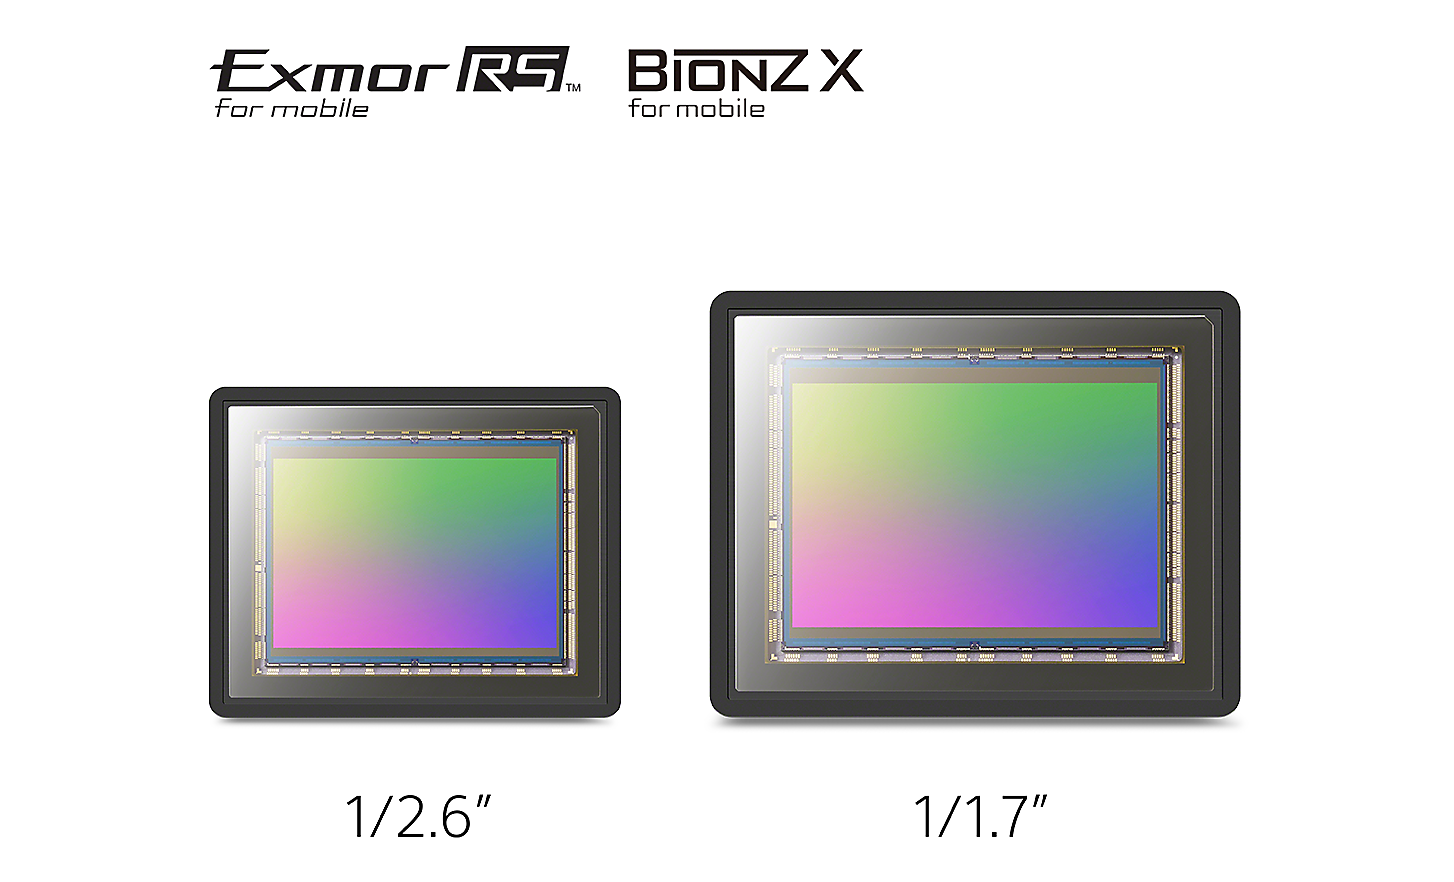 Imagine care compară un senzor de imagine de 1/2,6"; cu un senzor de imagine mai mare de 1/1,7";, plus sigle pentru Exmor RS™ pentru dispozitive mobile și Bionz X™ pentru dispozitive mobile